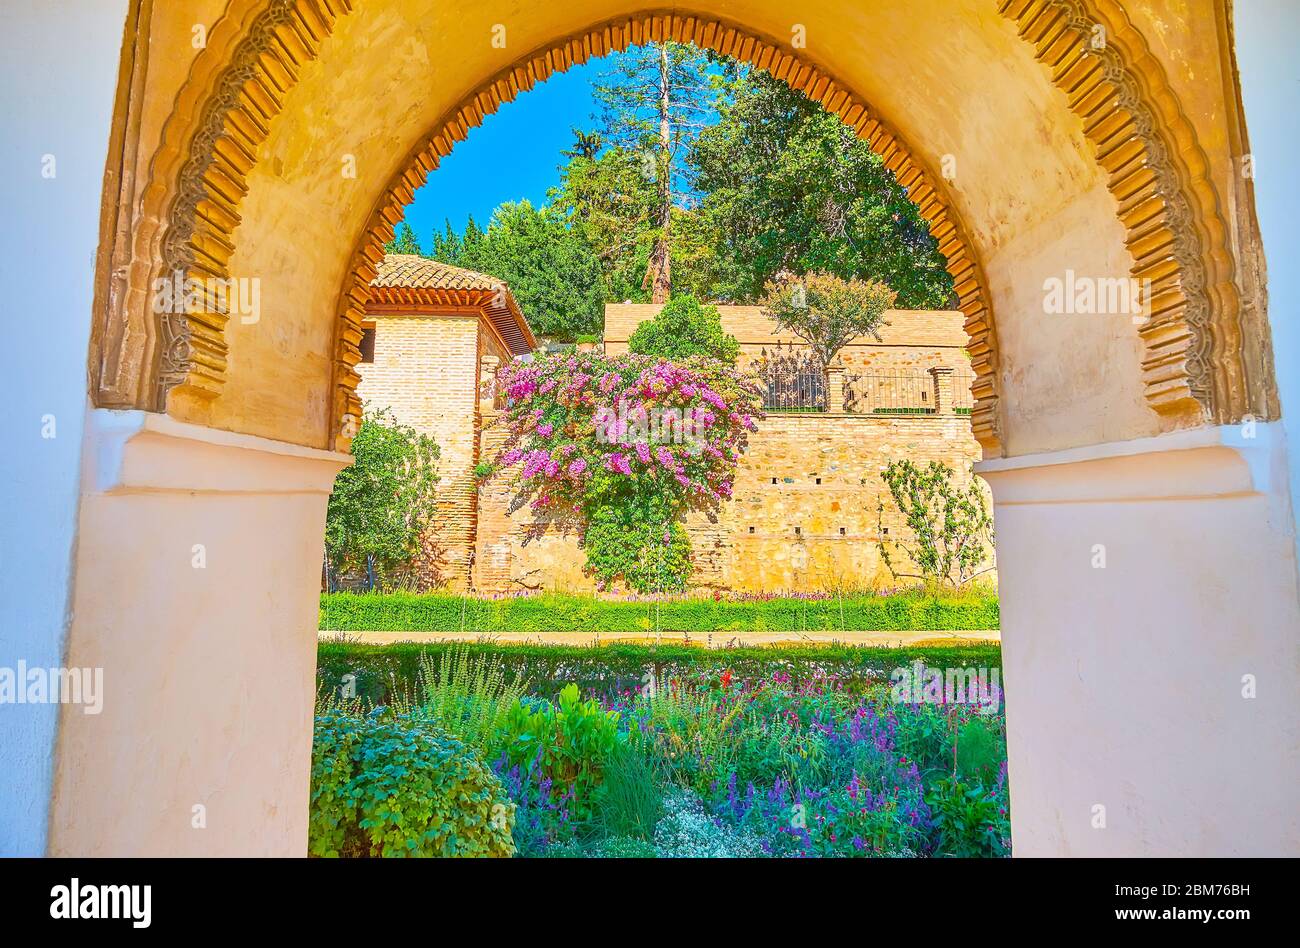 L'arche de style mudejar sculptée ouvre la vue sur les fleurs colorées et la végétation luxuriante du patio de l'irrigation de la Sorcière, Generalife, Alhambra, Grenade, Espagne Banque D'Images